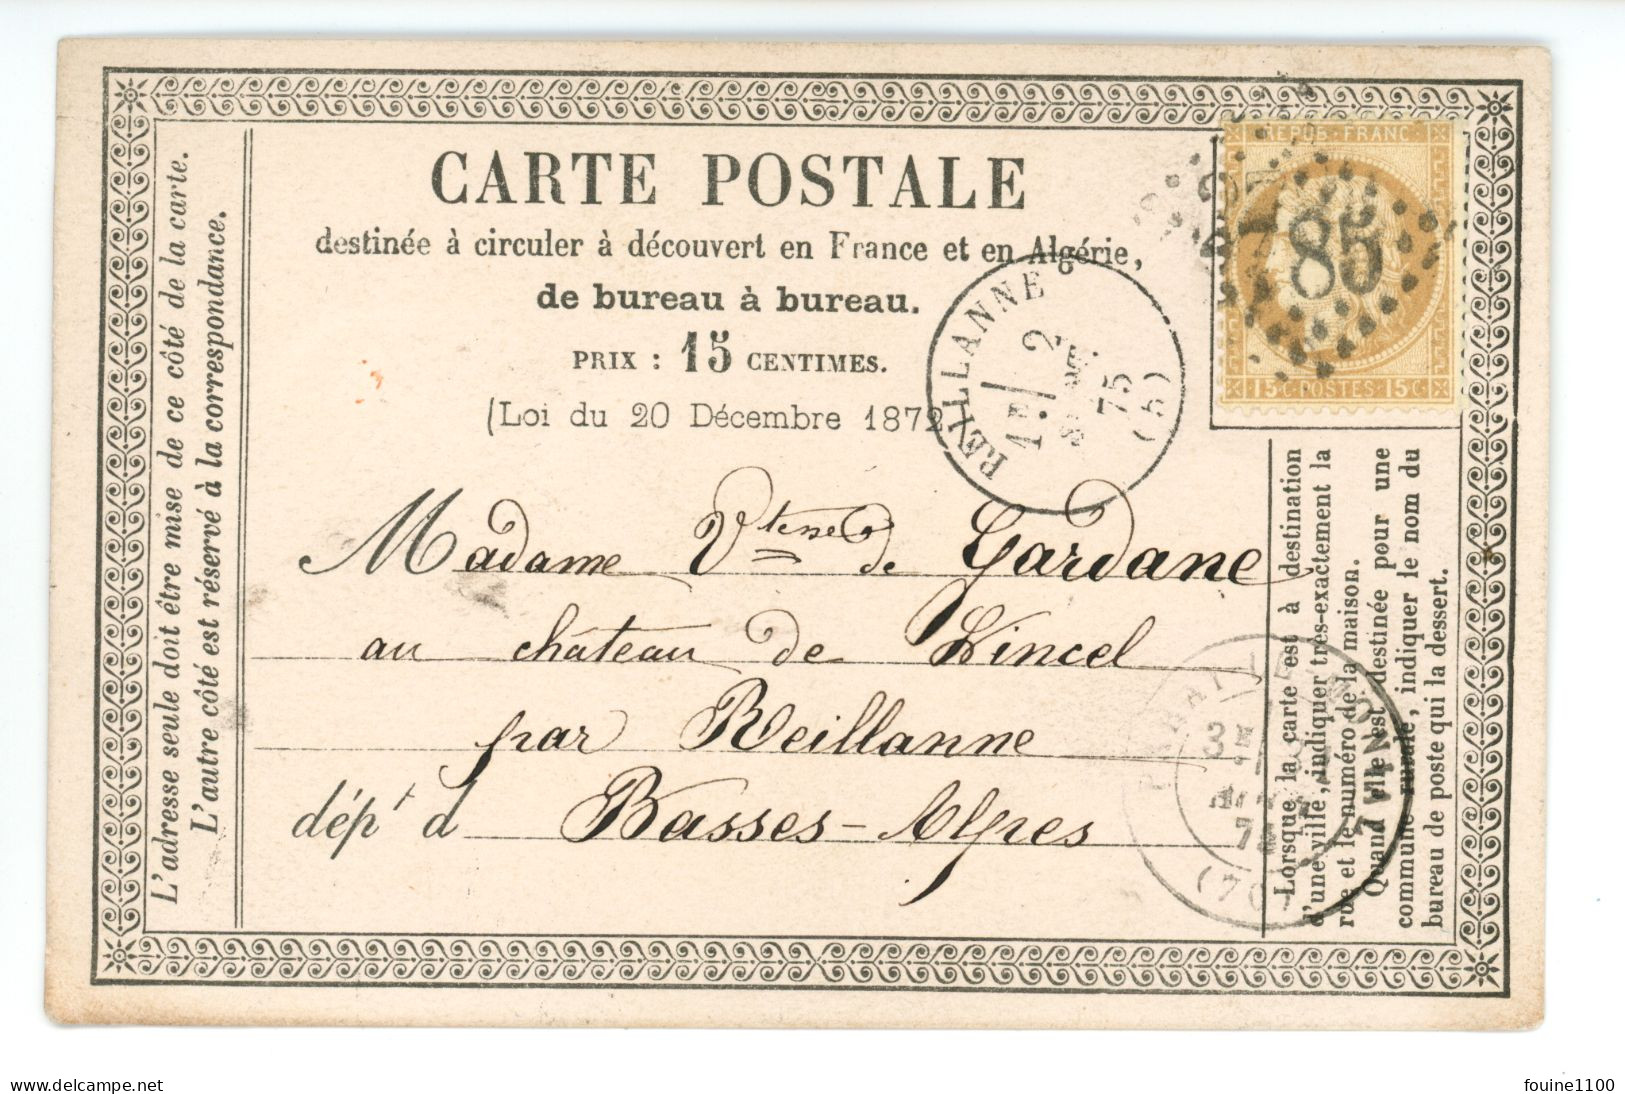 CARTE PRECURSEUR Vicomtesse DE GARDANE Château De Lincel REILLANNE 04 / Libraire BIDEAUD MUSSET à PARAY LE MONIAL - 1849-1876: Classic Period